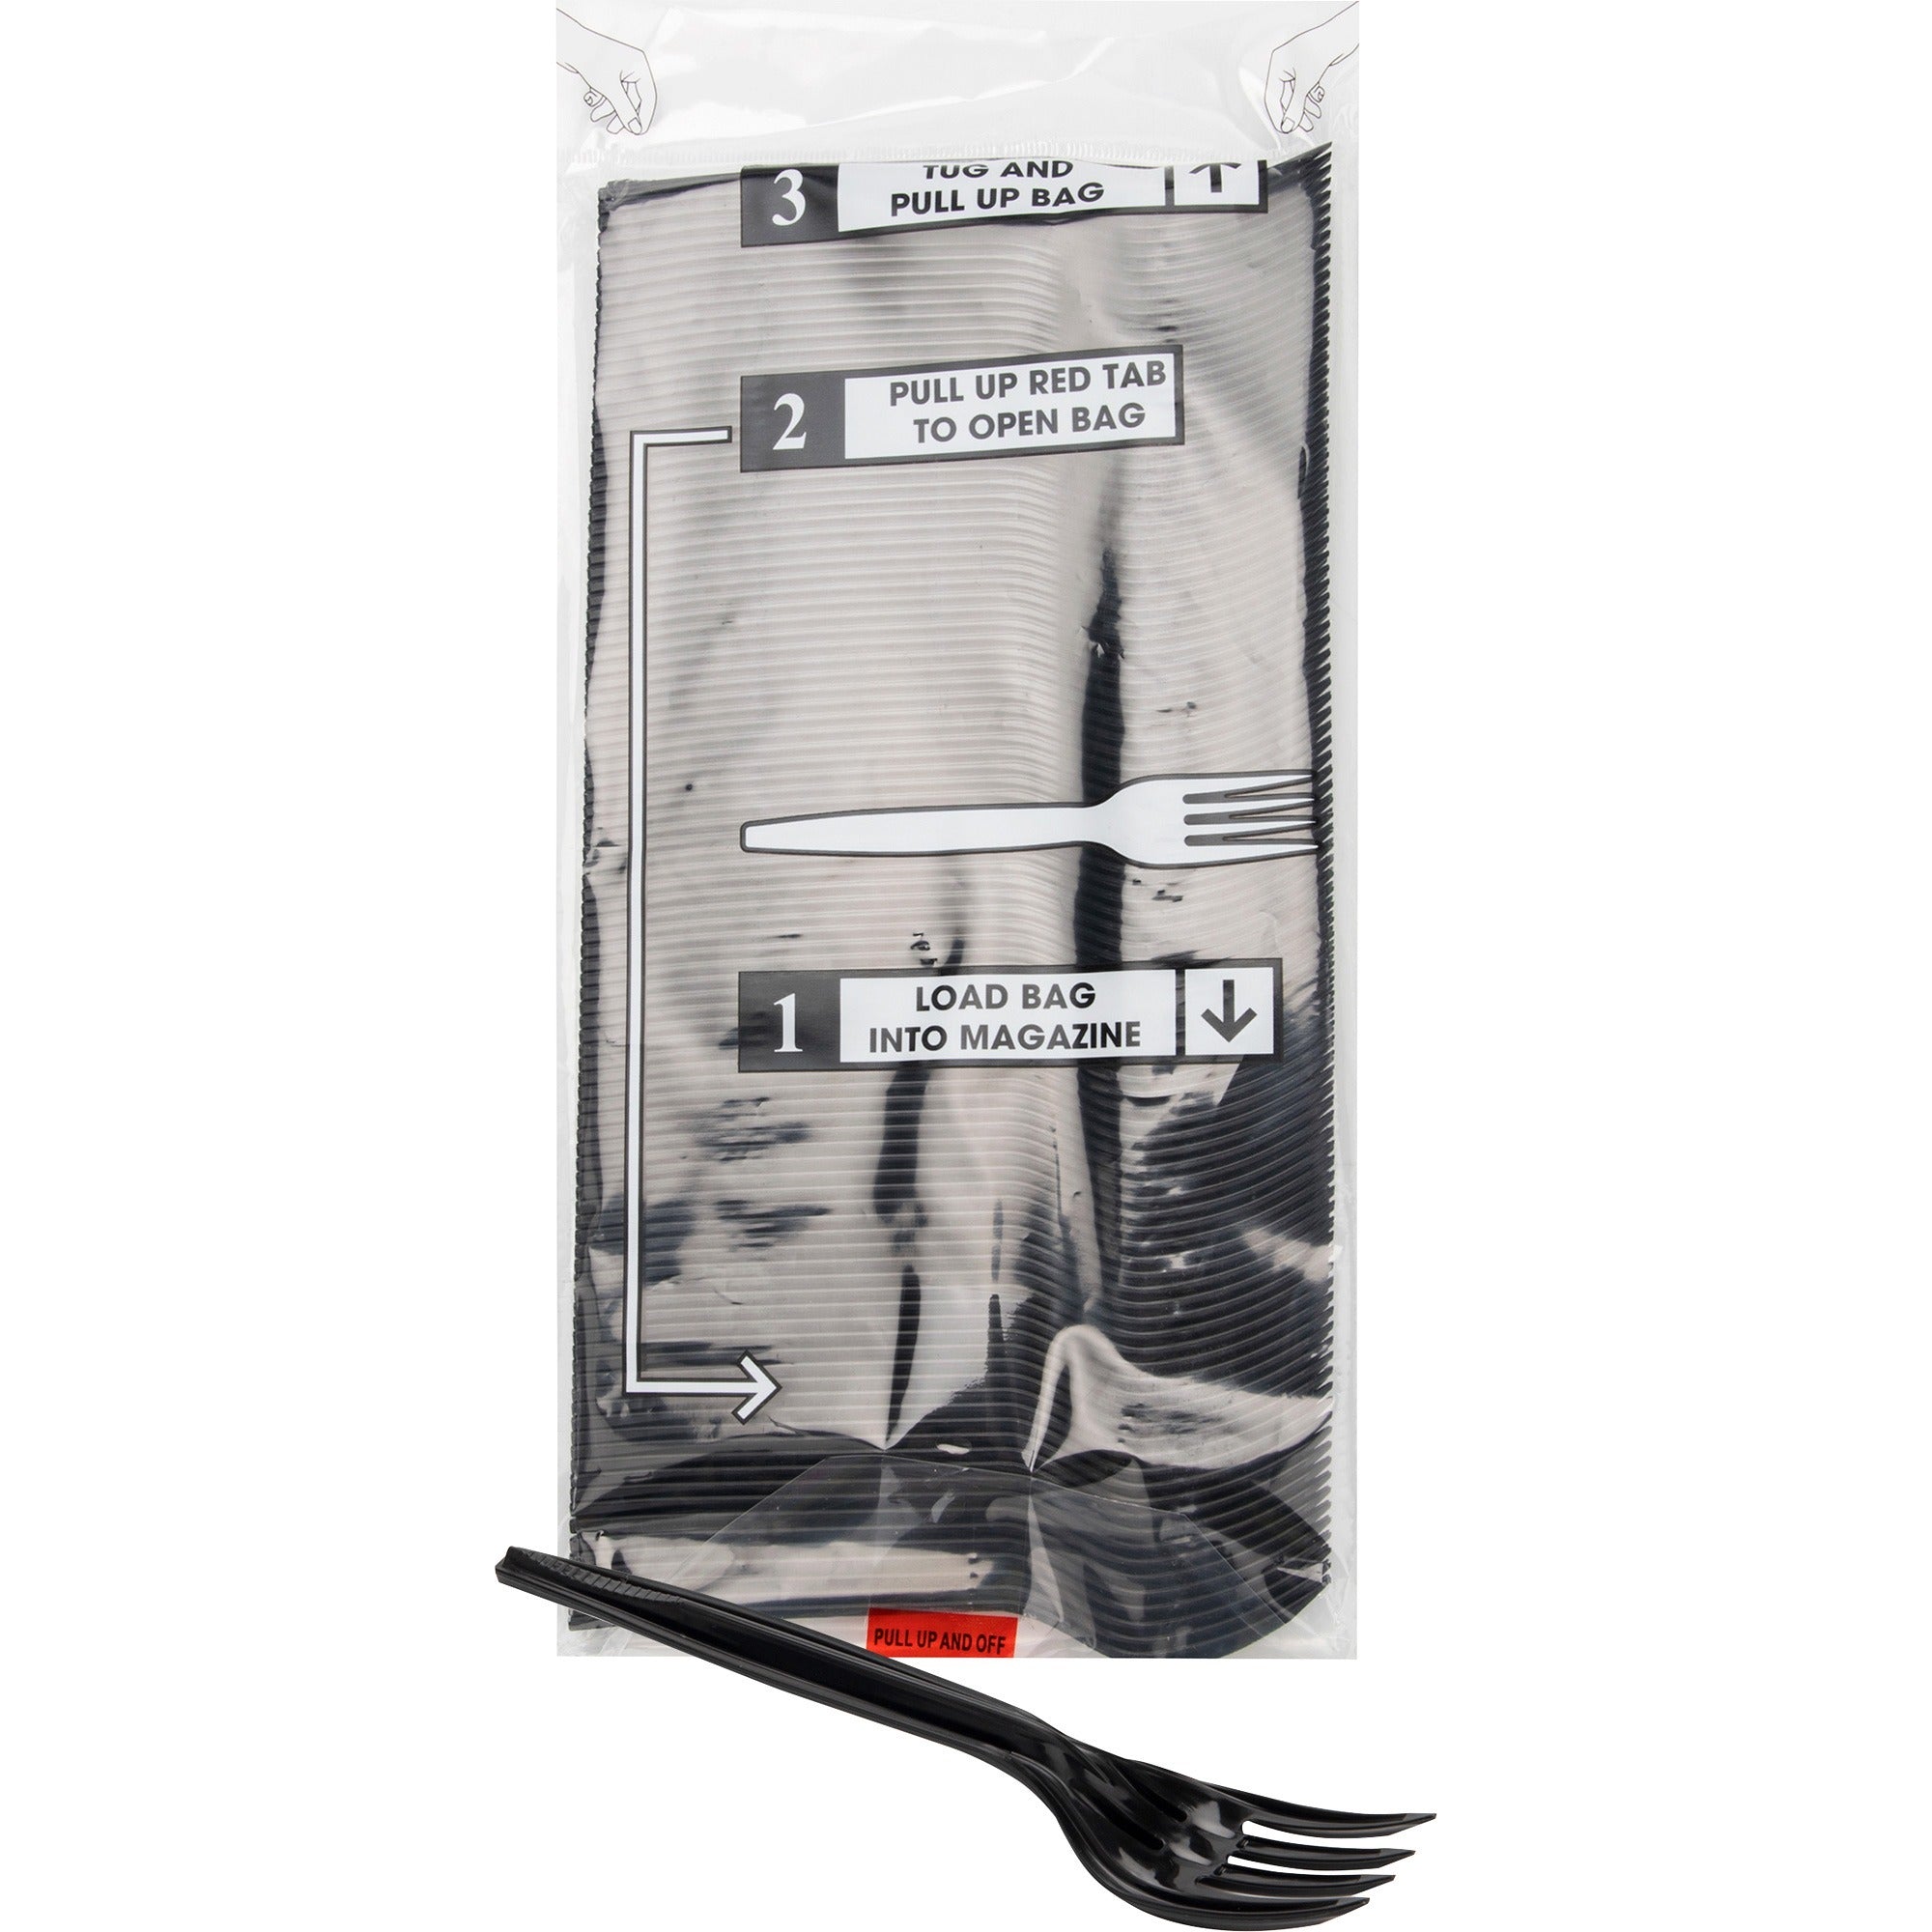 mind-reader-cutlery-dispenser-utensil-refill-100-pack-fork-kitchen-breakroom-black_emspfork100 - 1